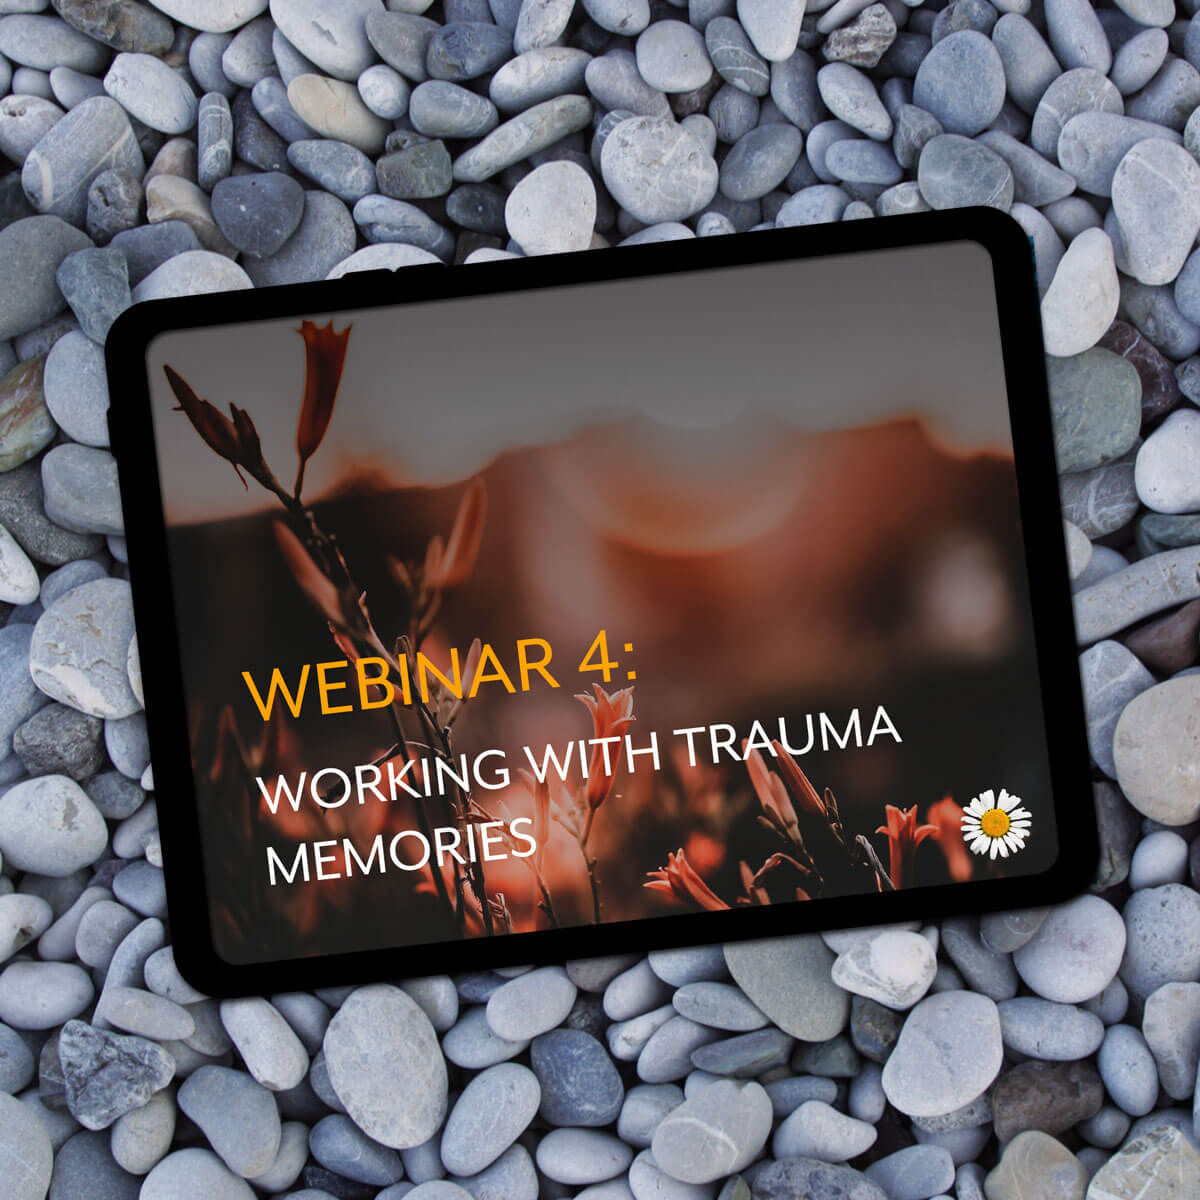 Webinar #4: Working with trauma memories - online trauma training by Carolyn Spring